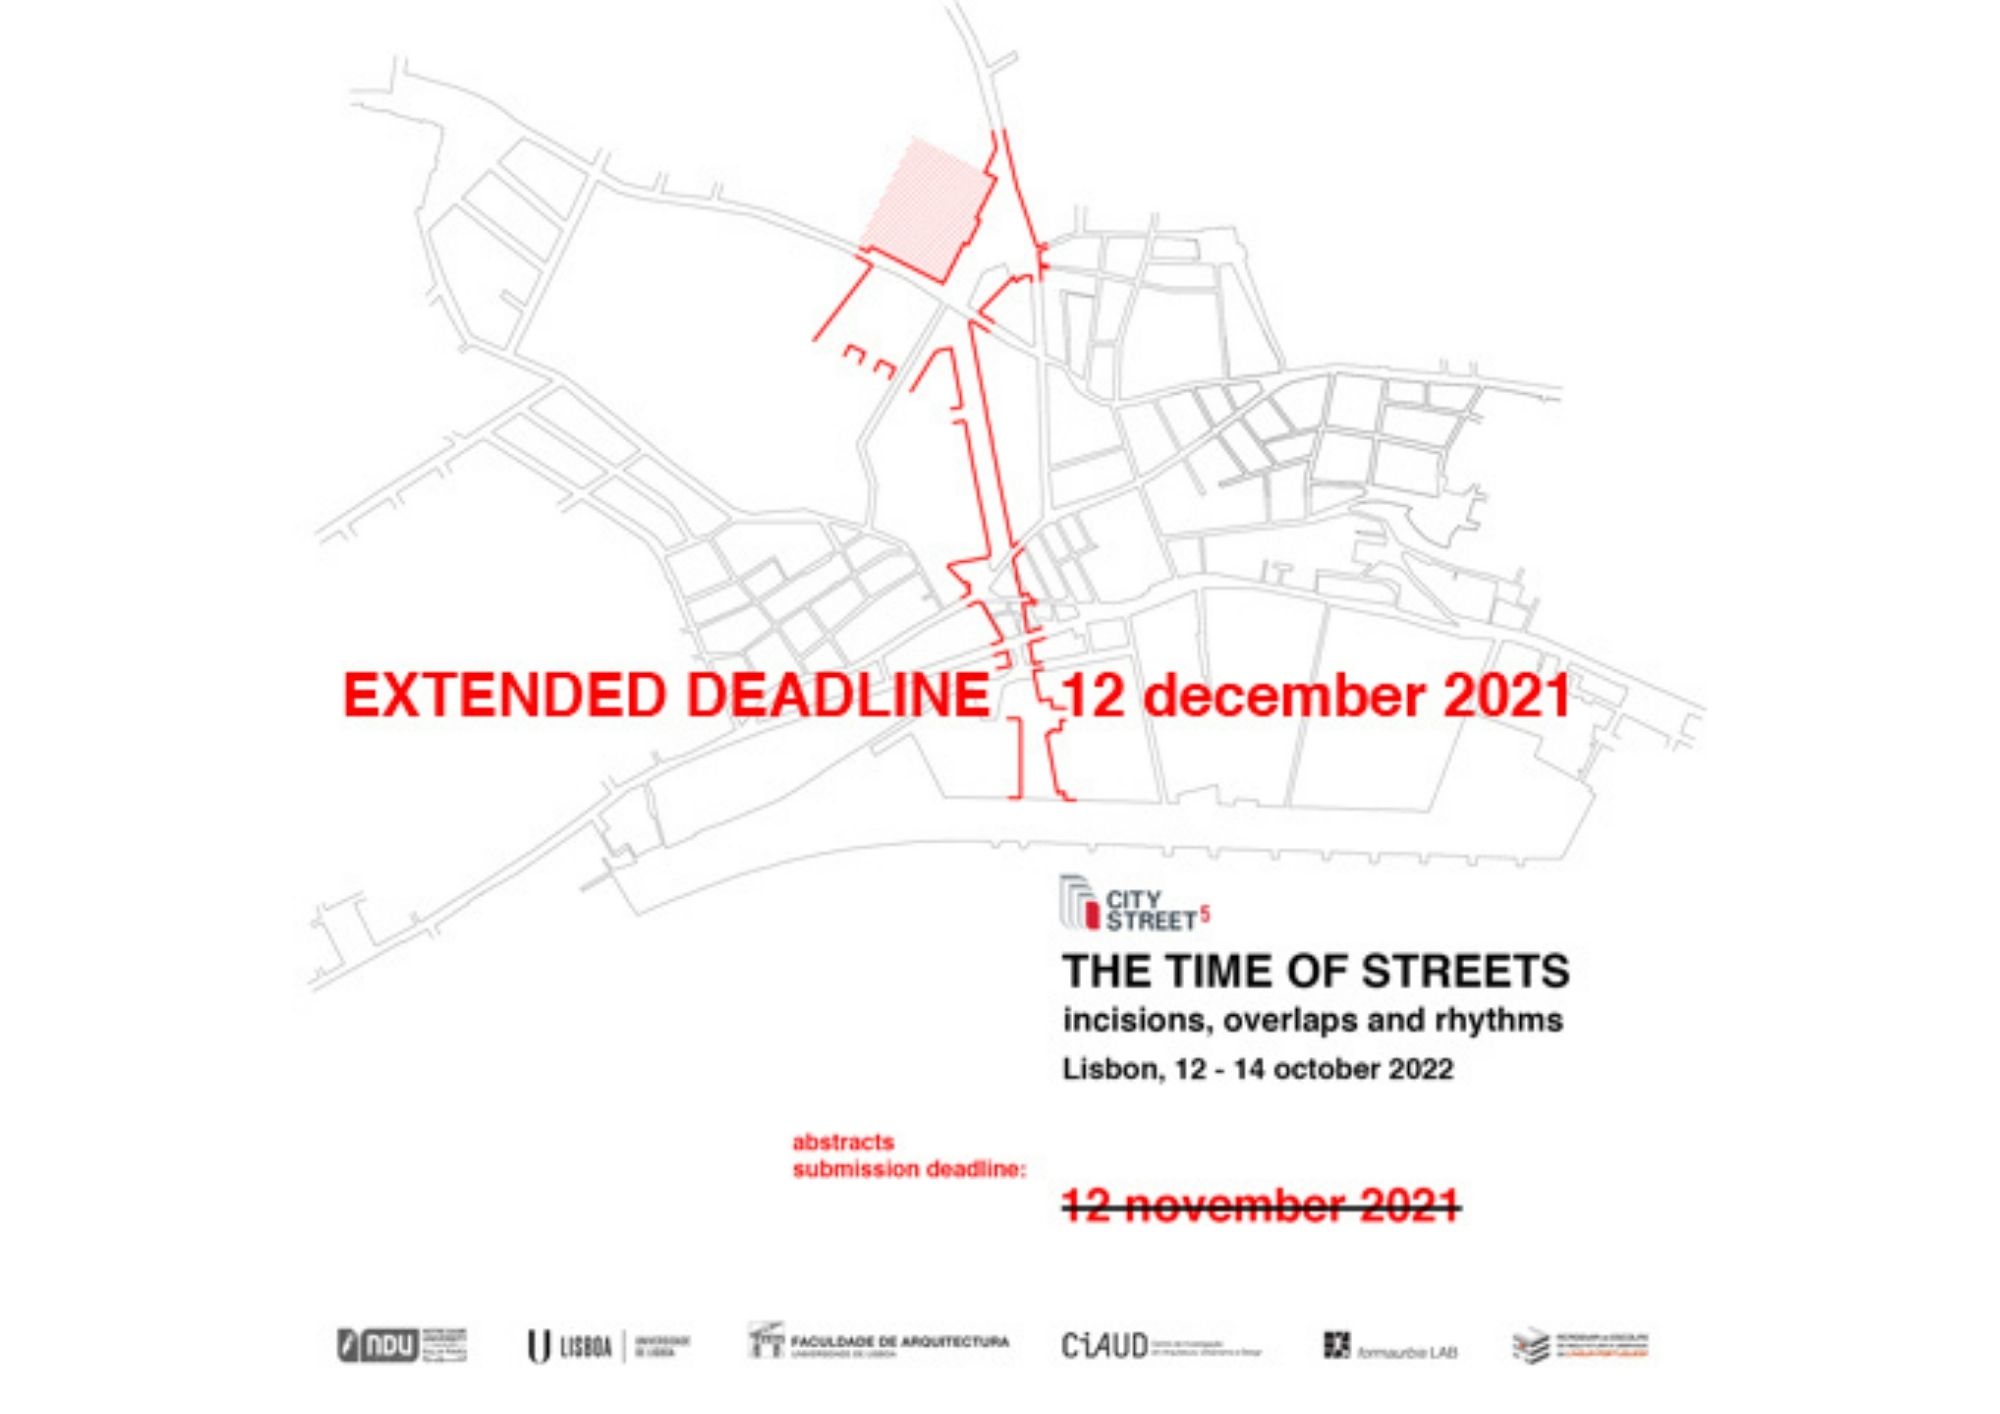 City Street 5, Nova data de submissão de abstract, até 12 de dezembro